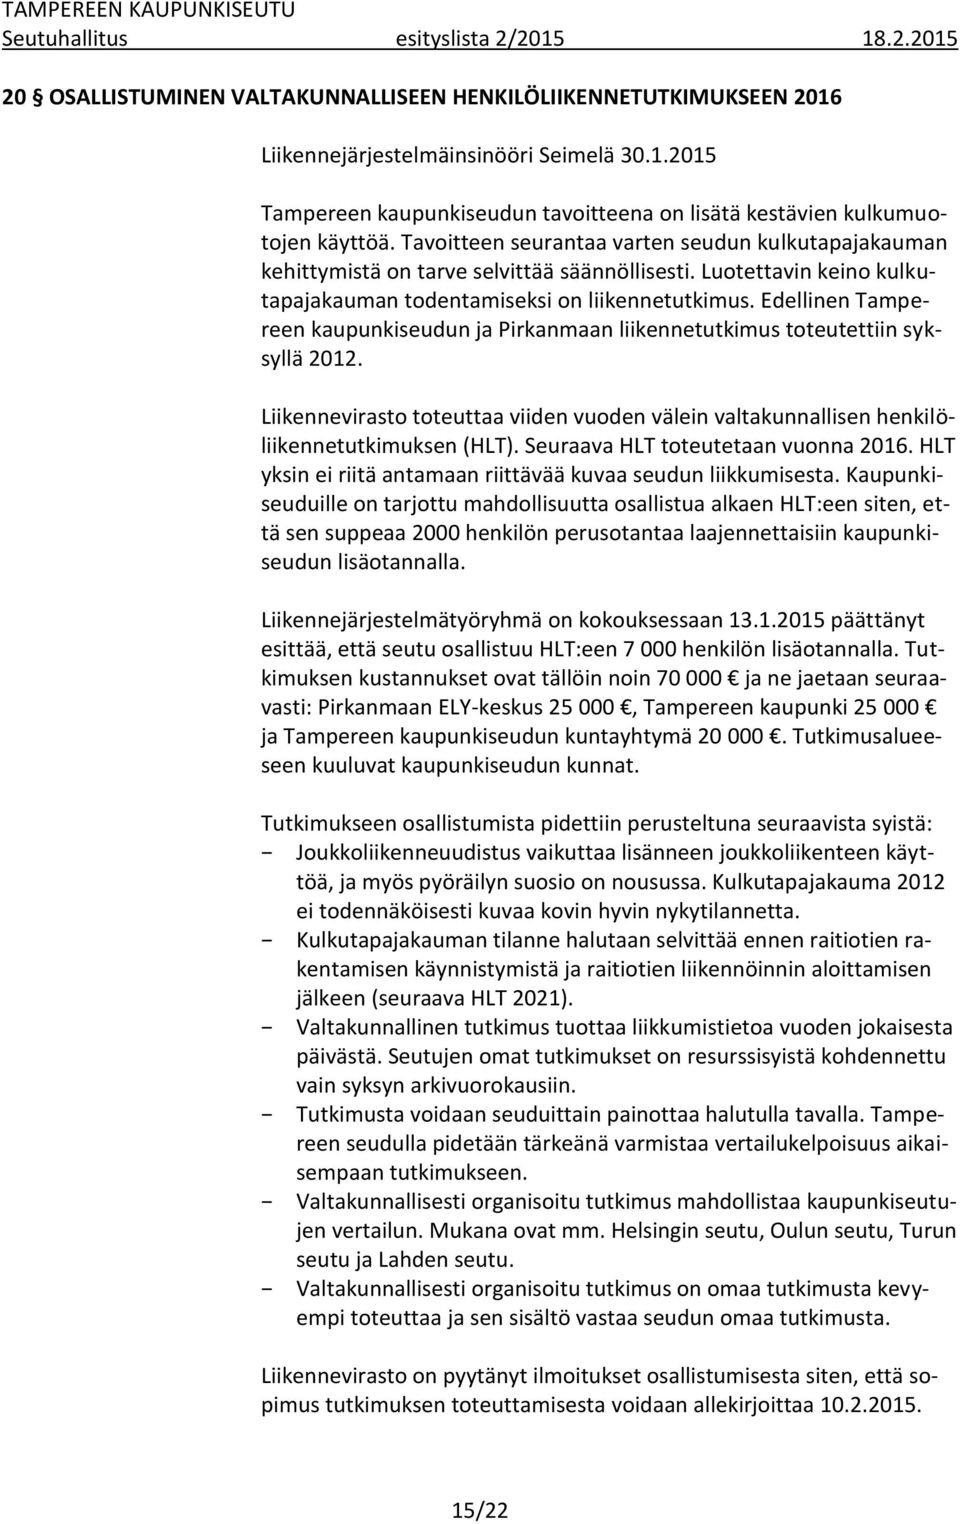 Edellinen Tampereen kaupunkiseudun ja Pirkanmaan liikennetutkimus toteutettiin syksyllä 2012. Liikennevirasto toteuttaa viiden vuoden välein valtakunnallisen henkilöliikennetutkimuksen (HLT).